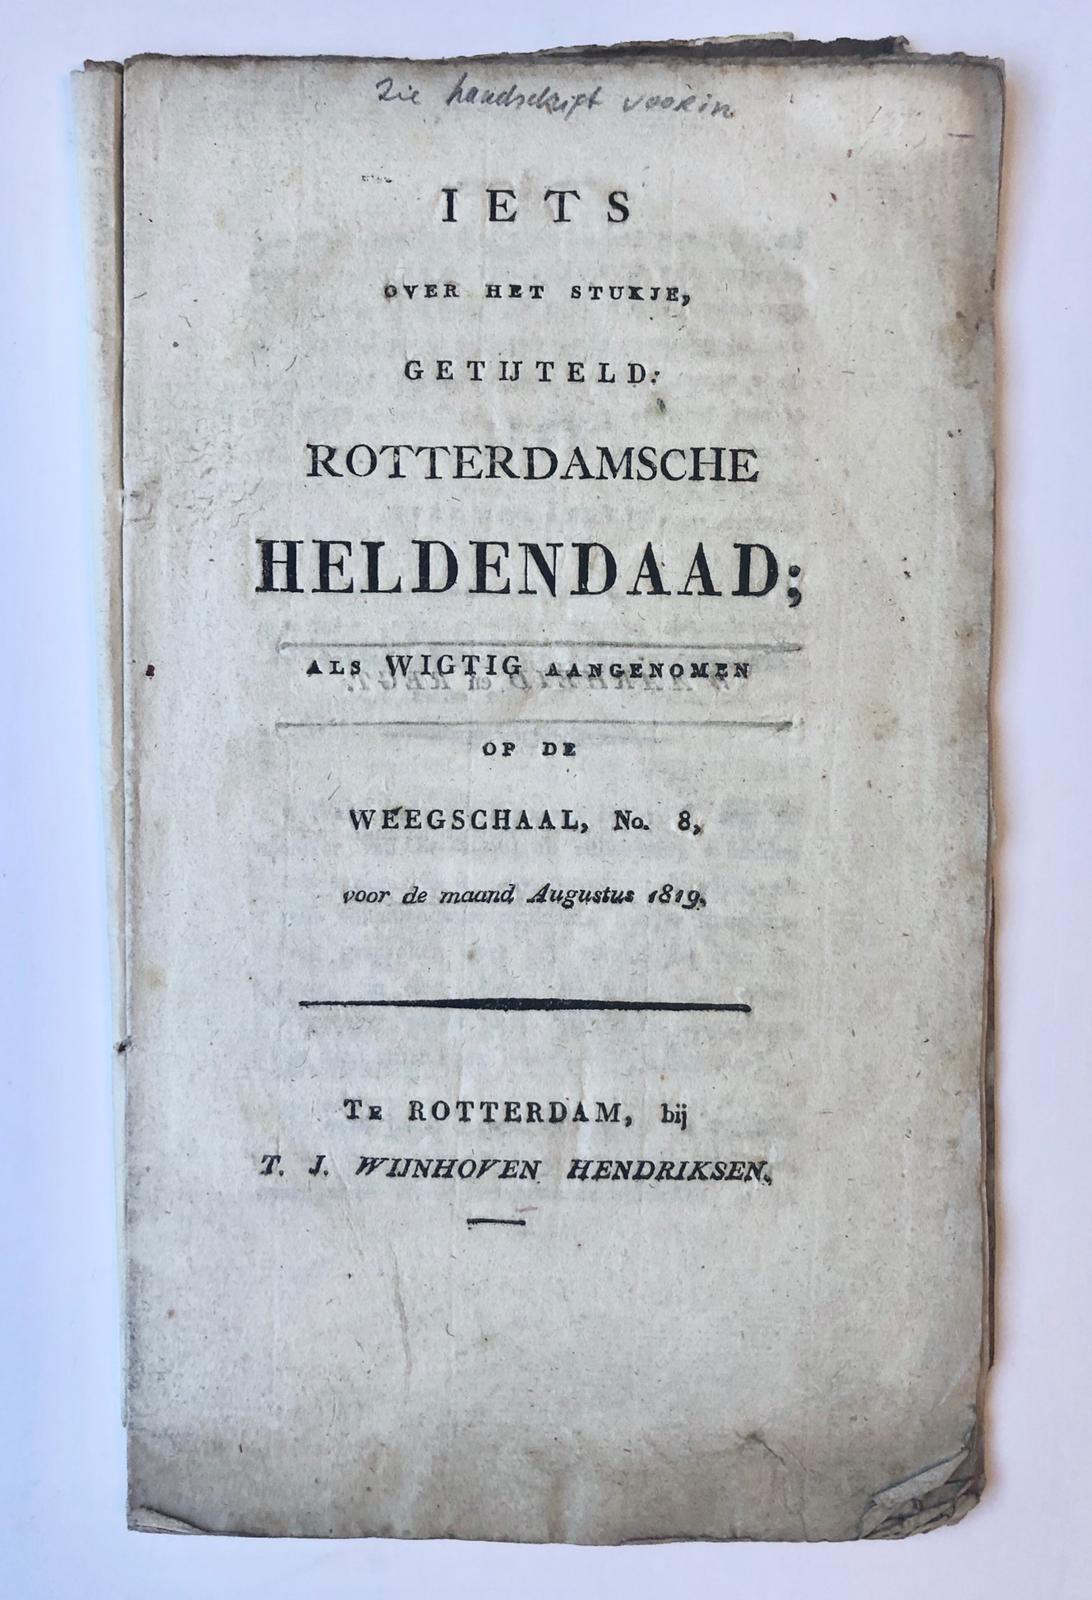 [Rotterdam, 1819] Iets over het stukje, getijteld Rotterdamsche Heldendaad; als wigtig aangenomen op de Weegschaal, No. 8, voor de maand Augustus 1819. T. J. Wijnhoven Hendriksen, Te Rotterdam, 13 pp.